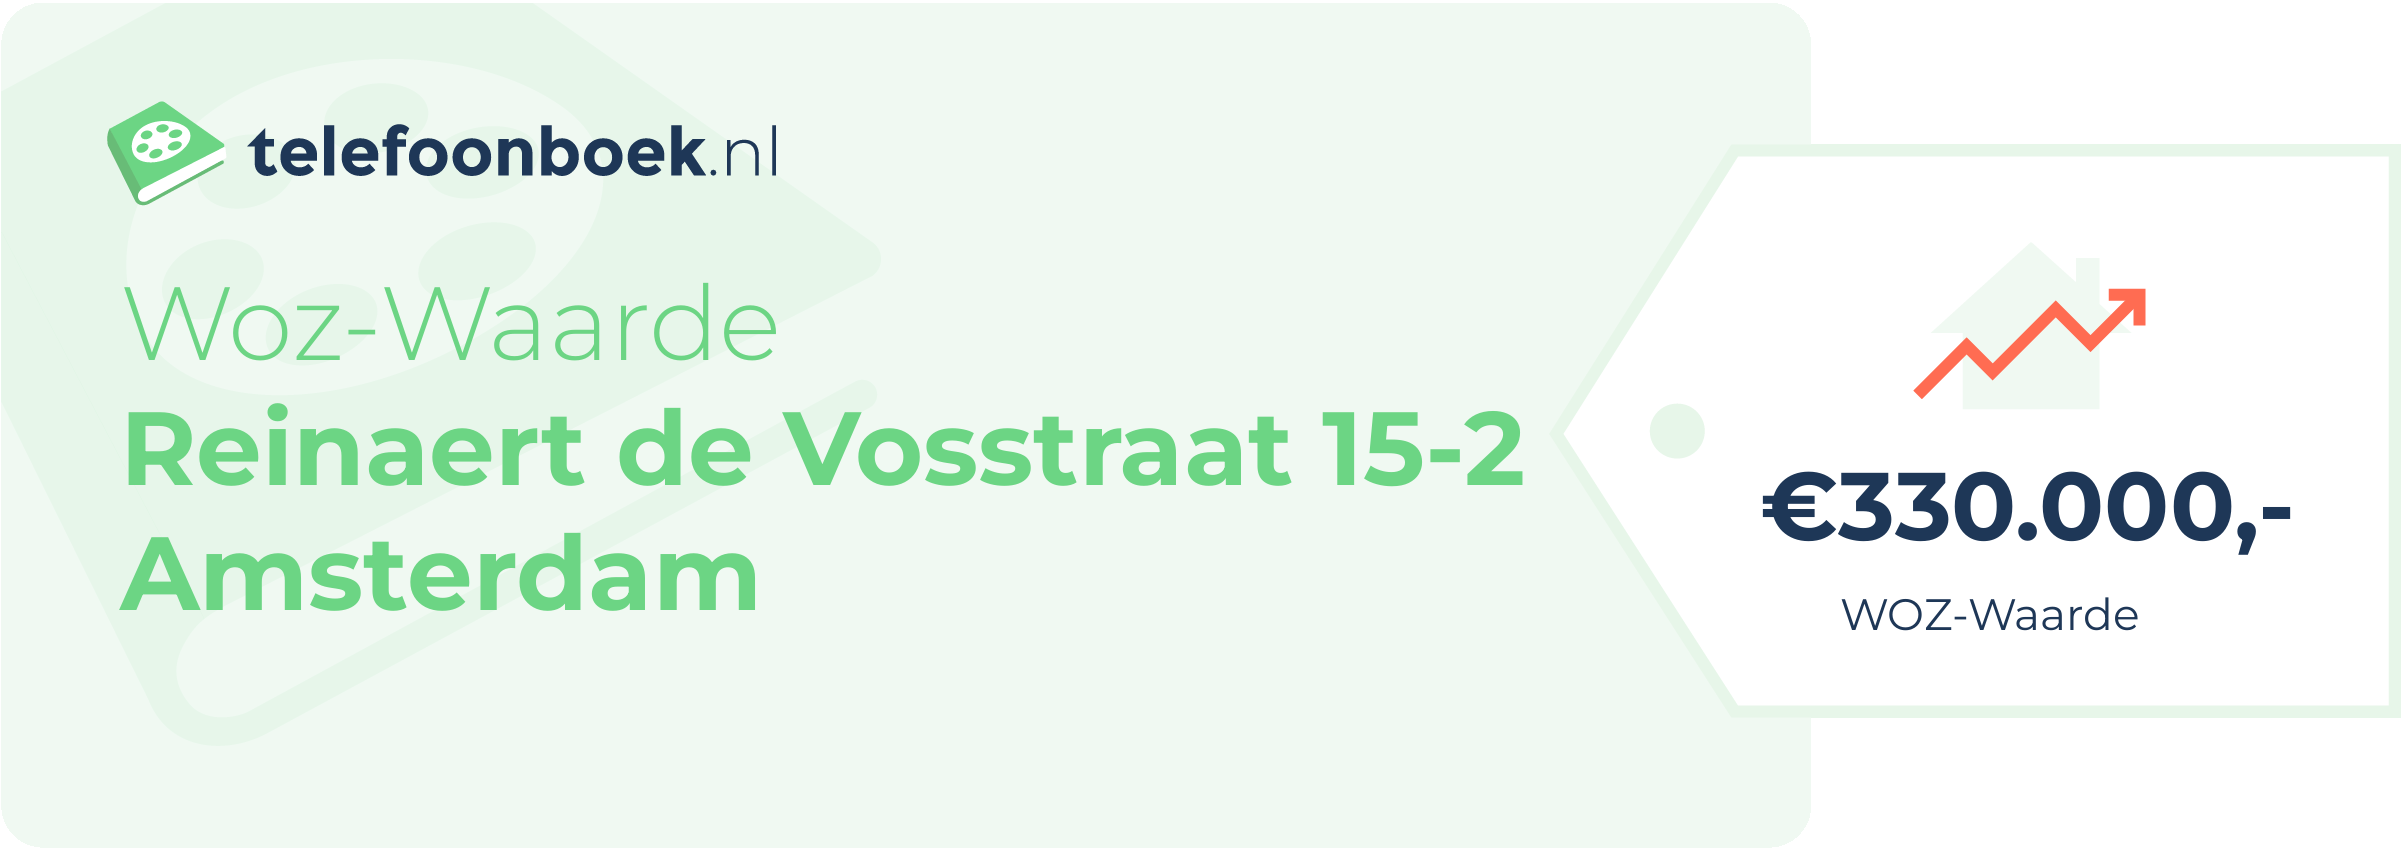 WOZ-waarde Reinaert De Vosstraat 15-2 Amsterdam